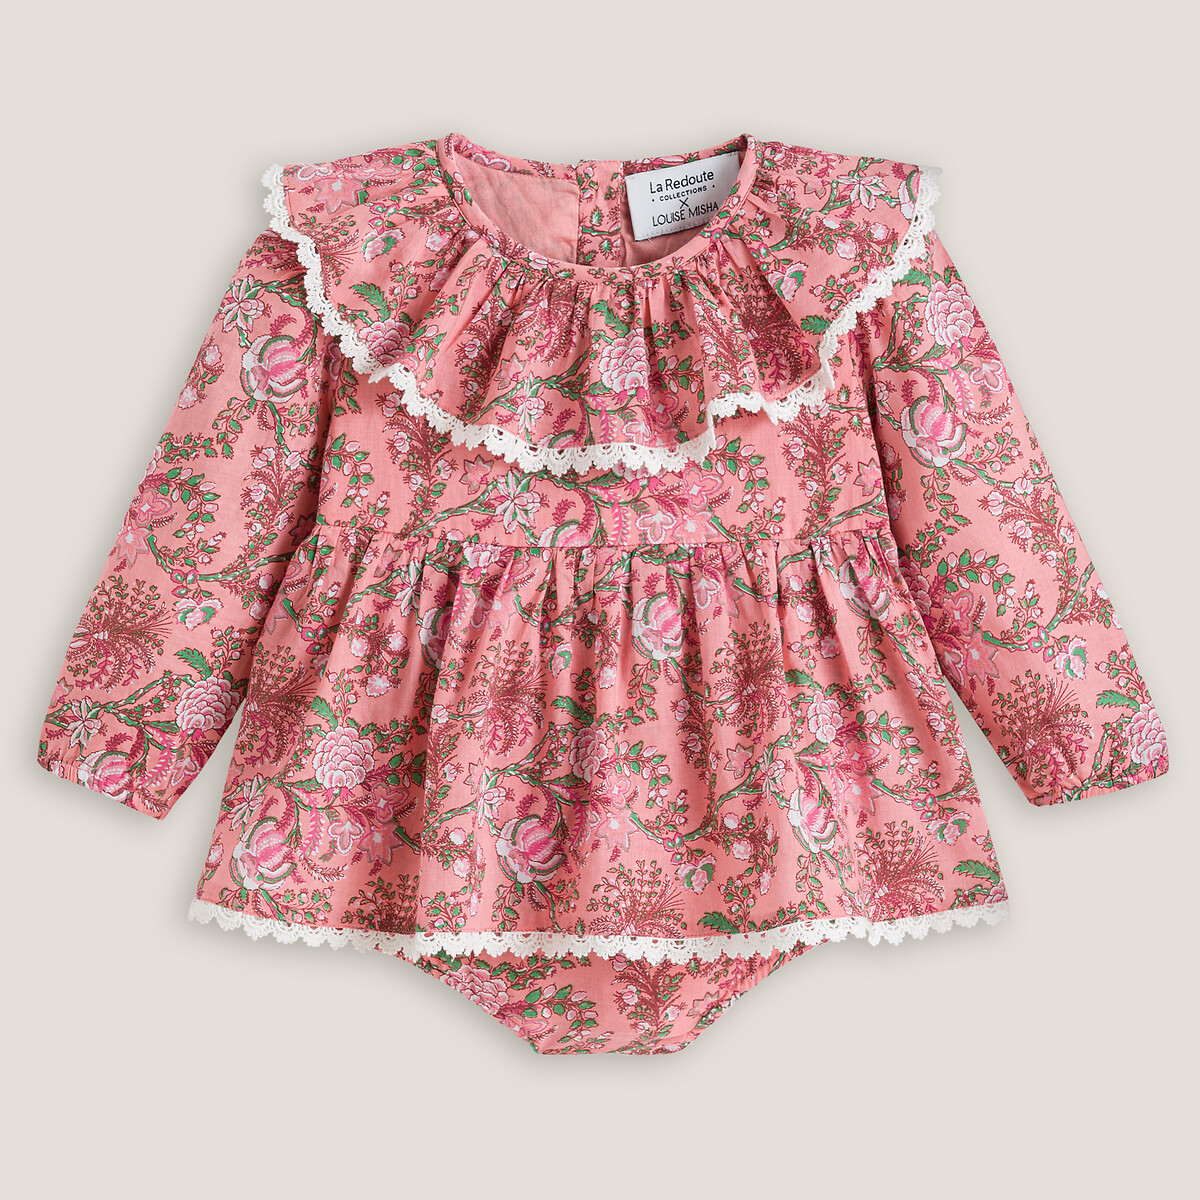 Платье-комбинезон LOUISE MISHA X LA REDOUTE COLLECTIONS С длинными рукавами 3 месяца-2 года 18 мес. - 81 см розовый, размер 18 мес. - 81 см